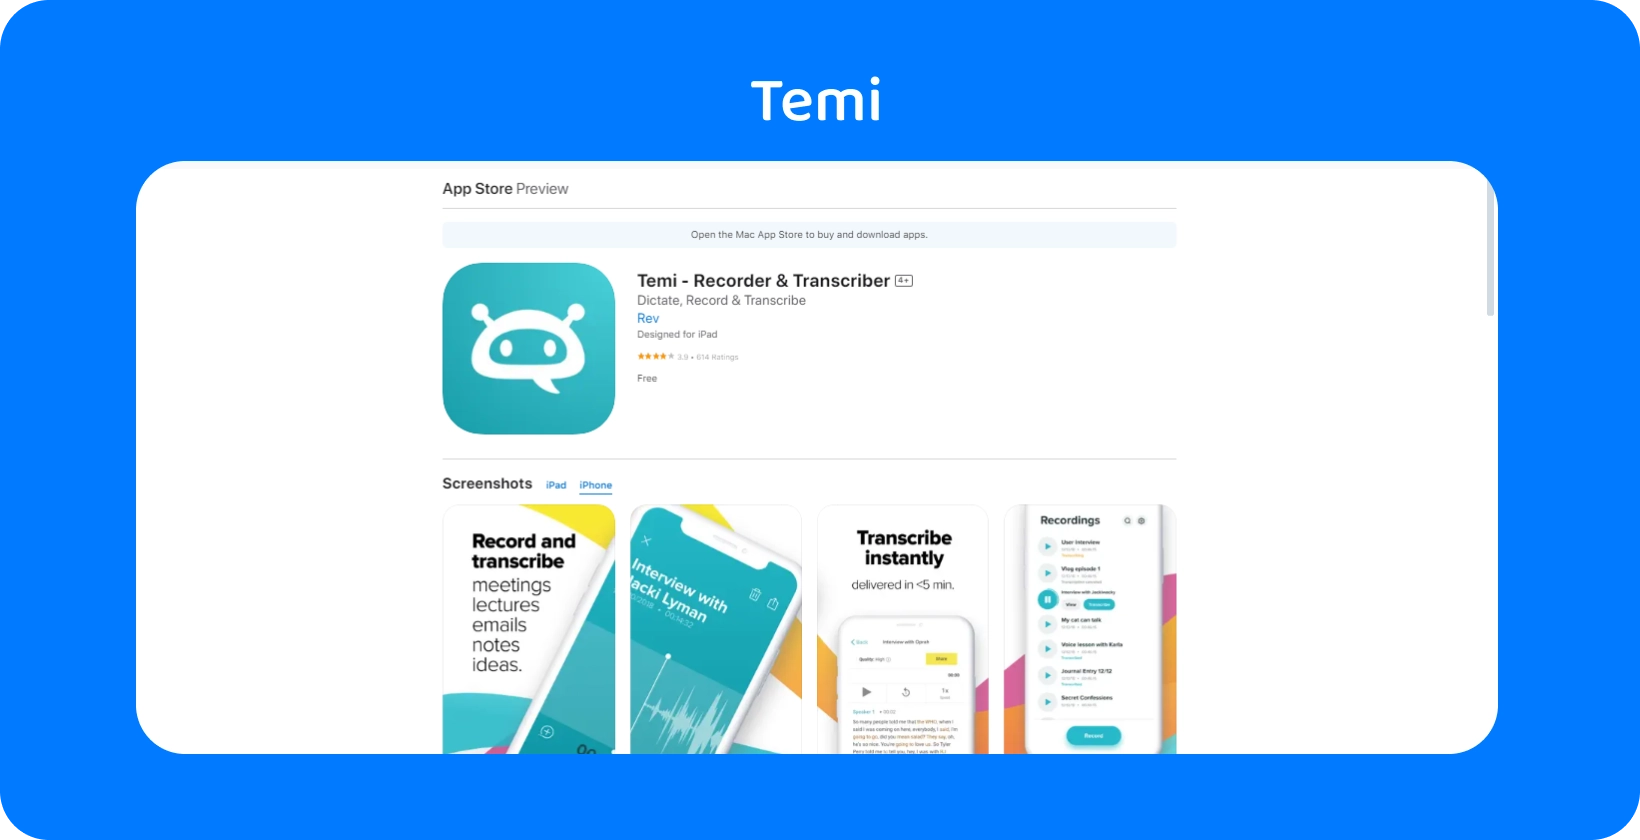 Captura de tela de Temi App Store listagem, enfatizando seus recursos de gravação rápida e transcrição instantânea.